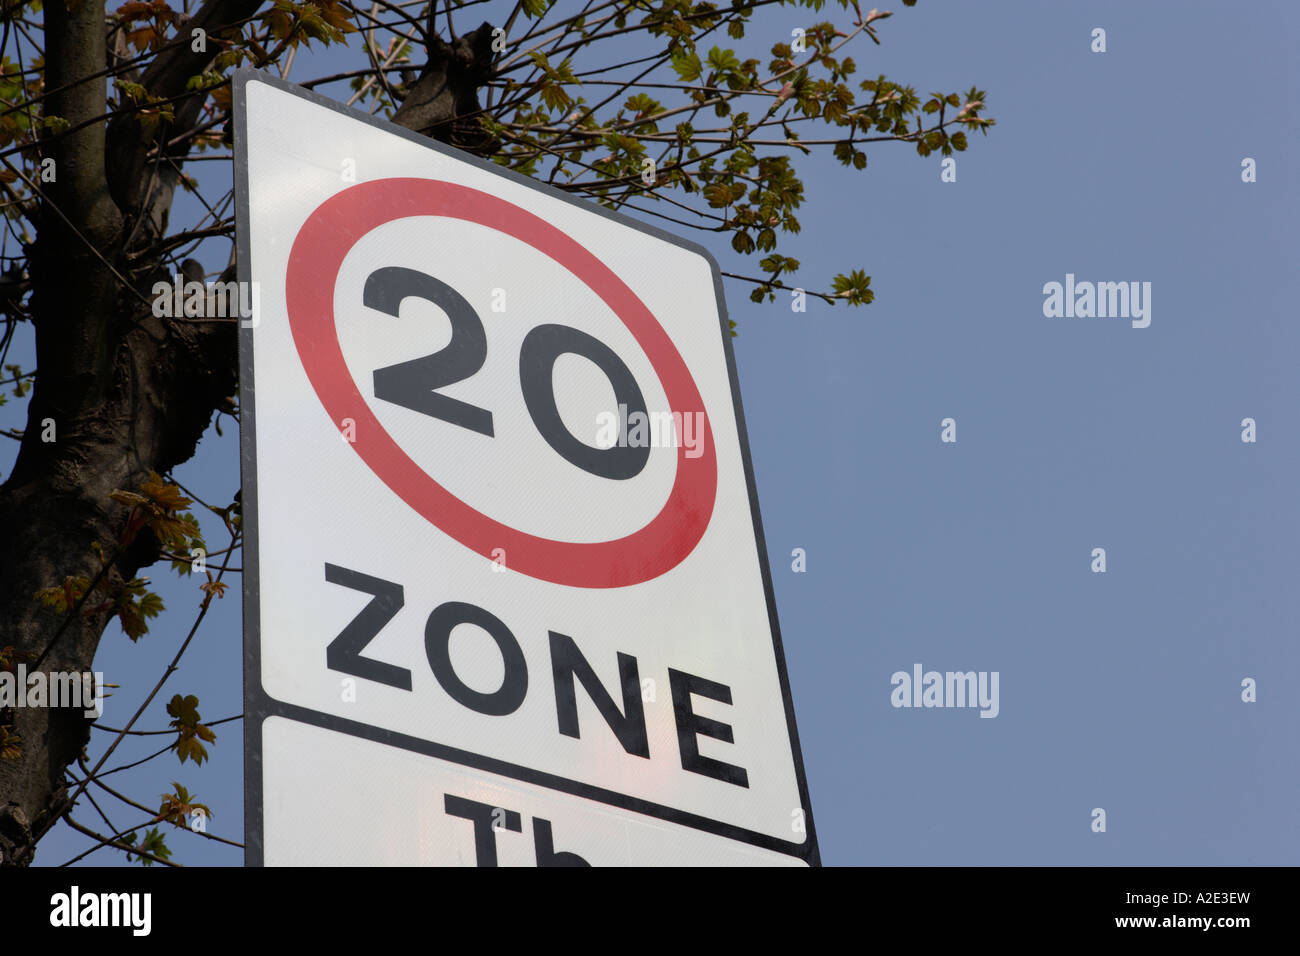 20 Miles Per Hour Zone Stock Photo